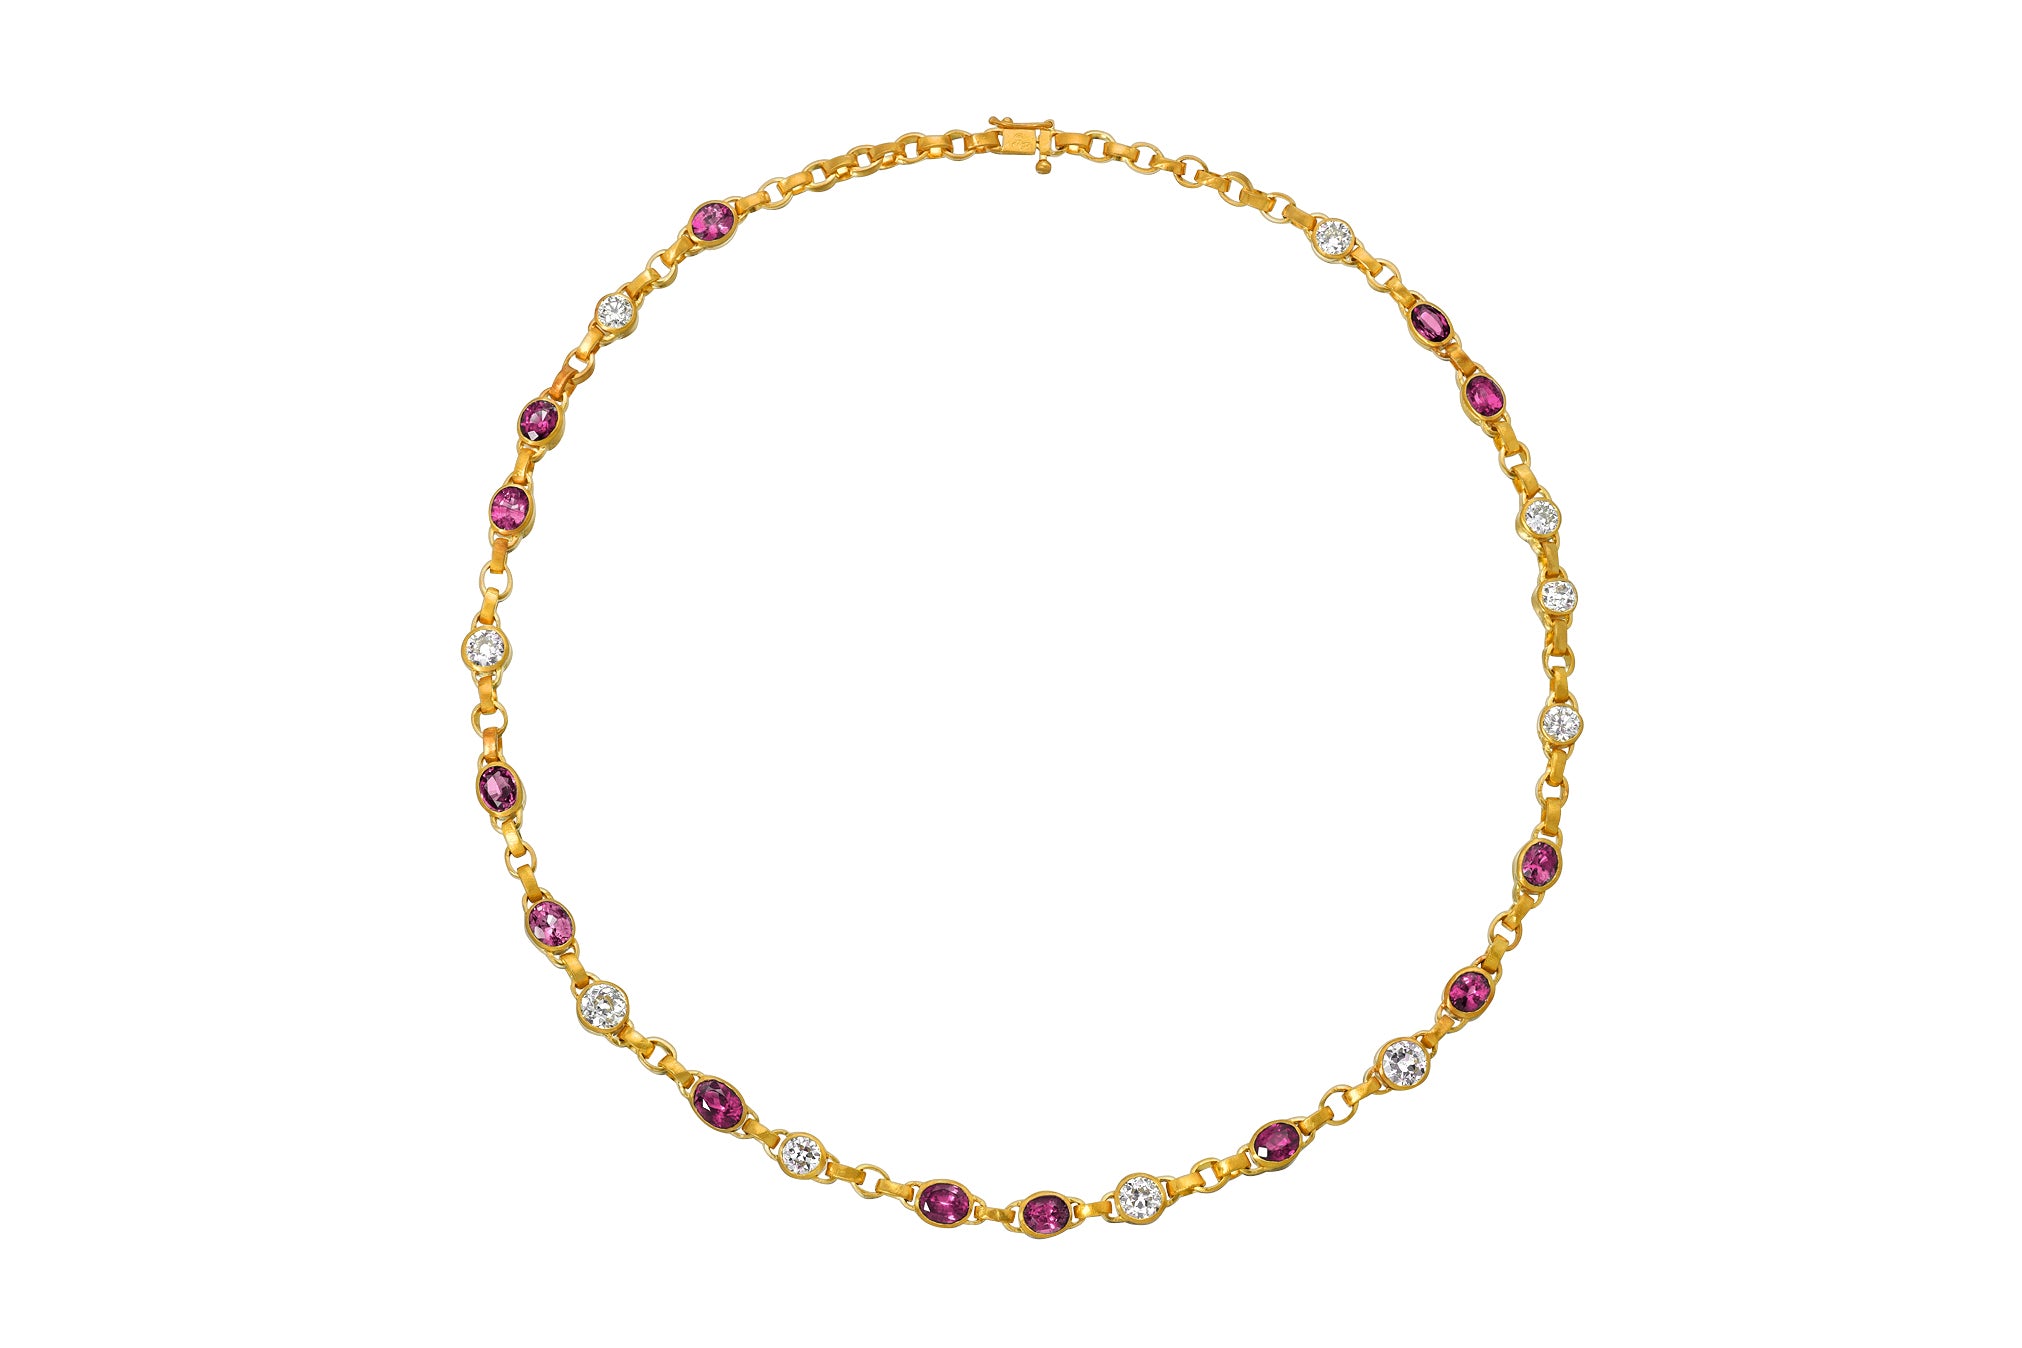 Darius Jewels pink sapphire and diamond signature chain necklace Darius Khonsary Arielle Chiara